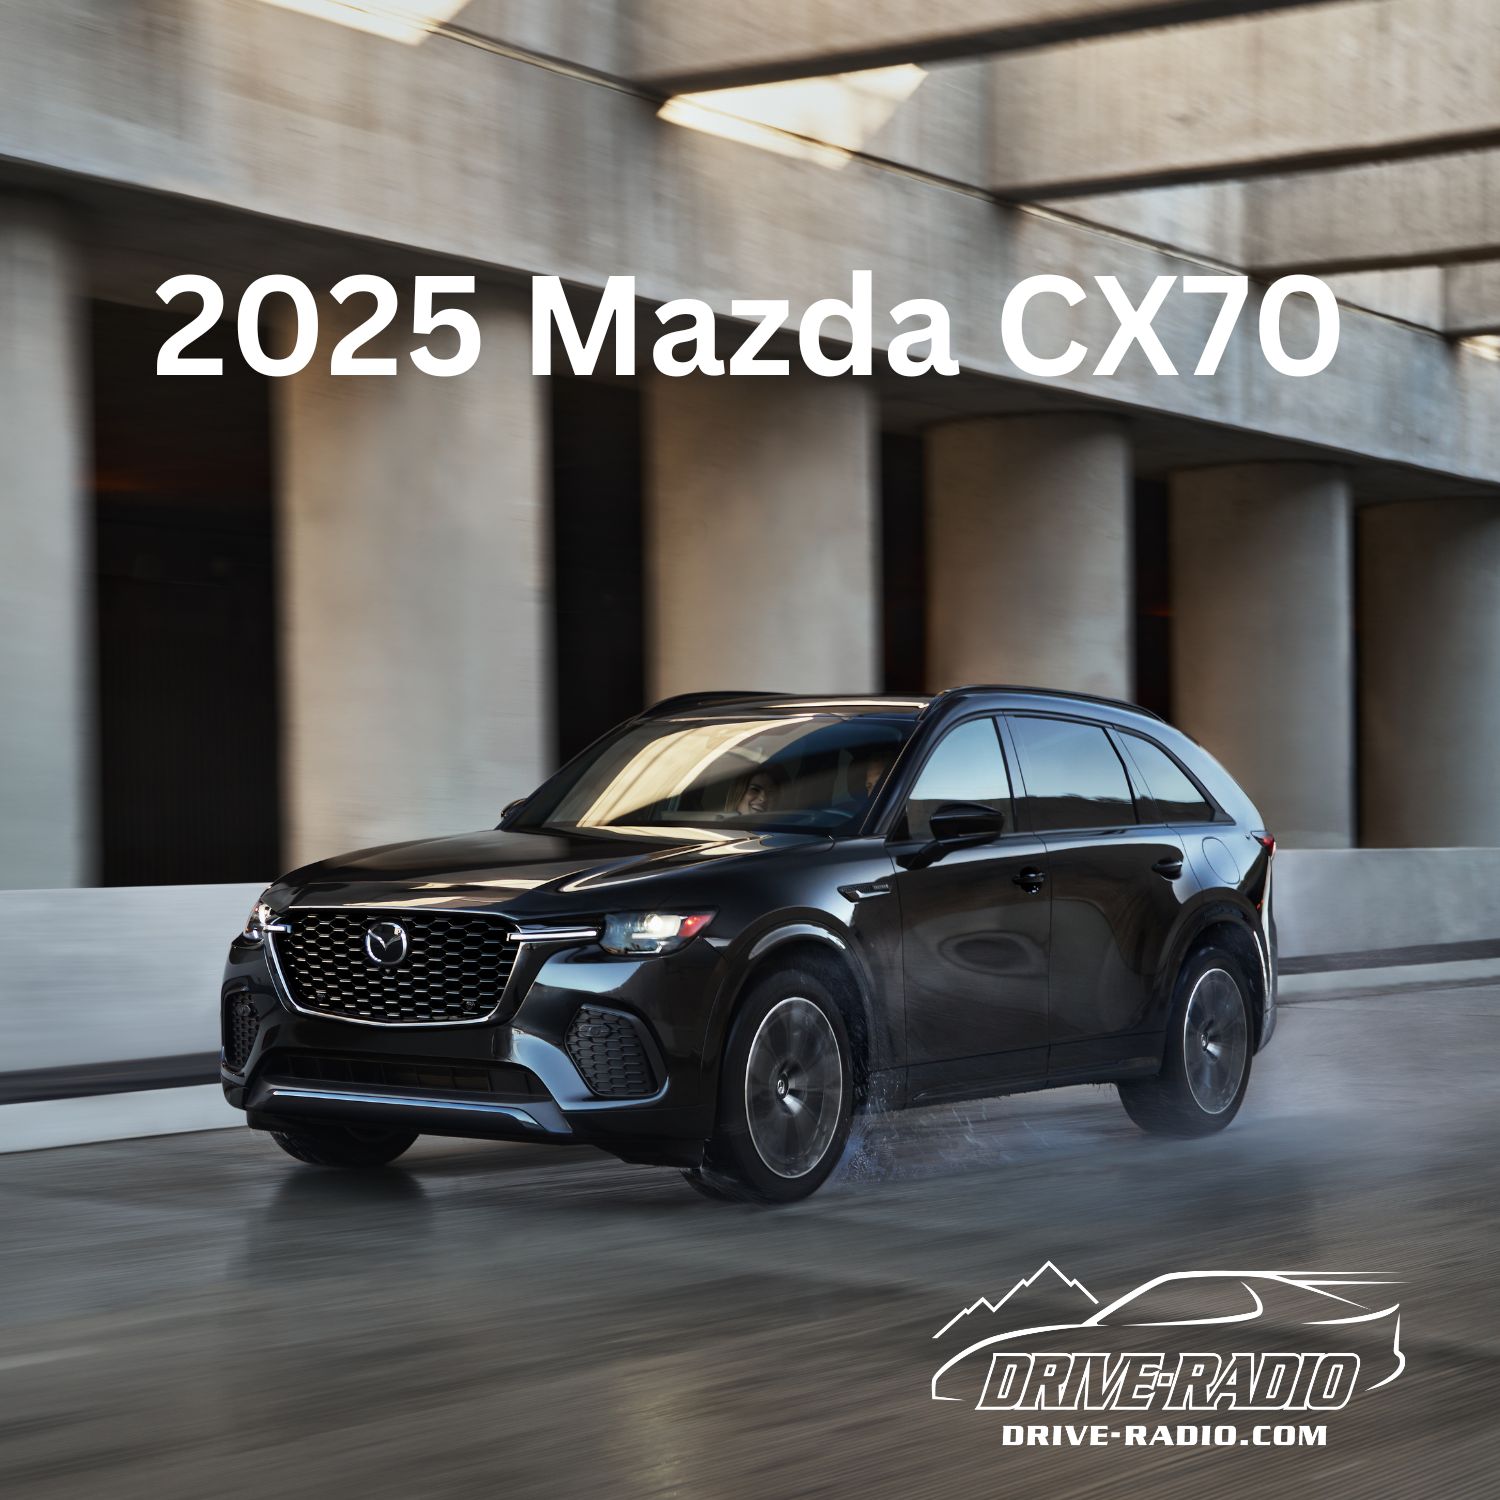 2025 Mazda CX70